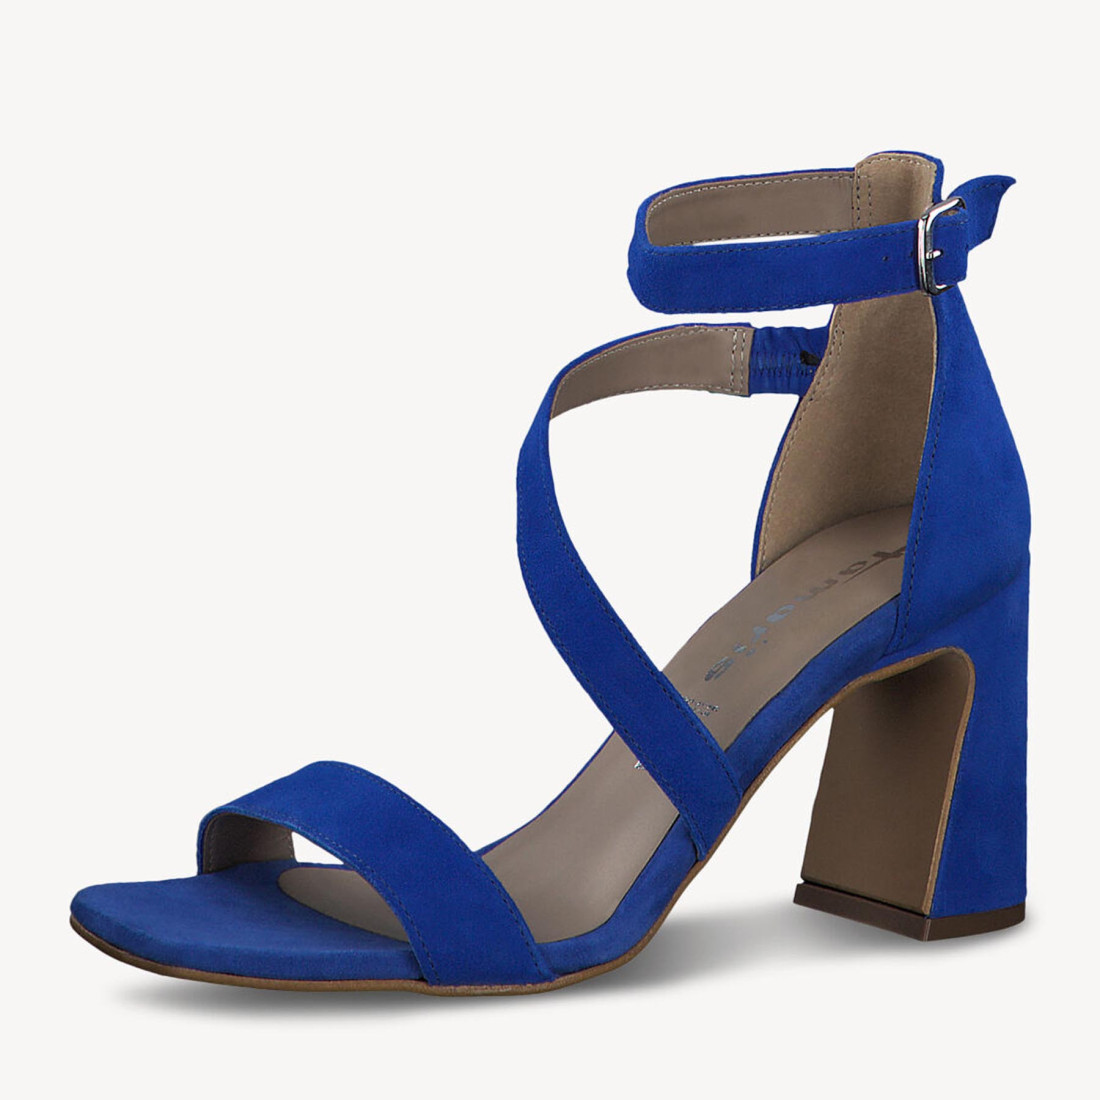 ideologi udgør stemme Elegant Tamaris sandal in royal blue suede with strap and high heel